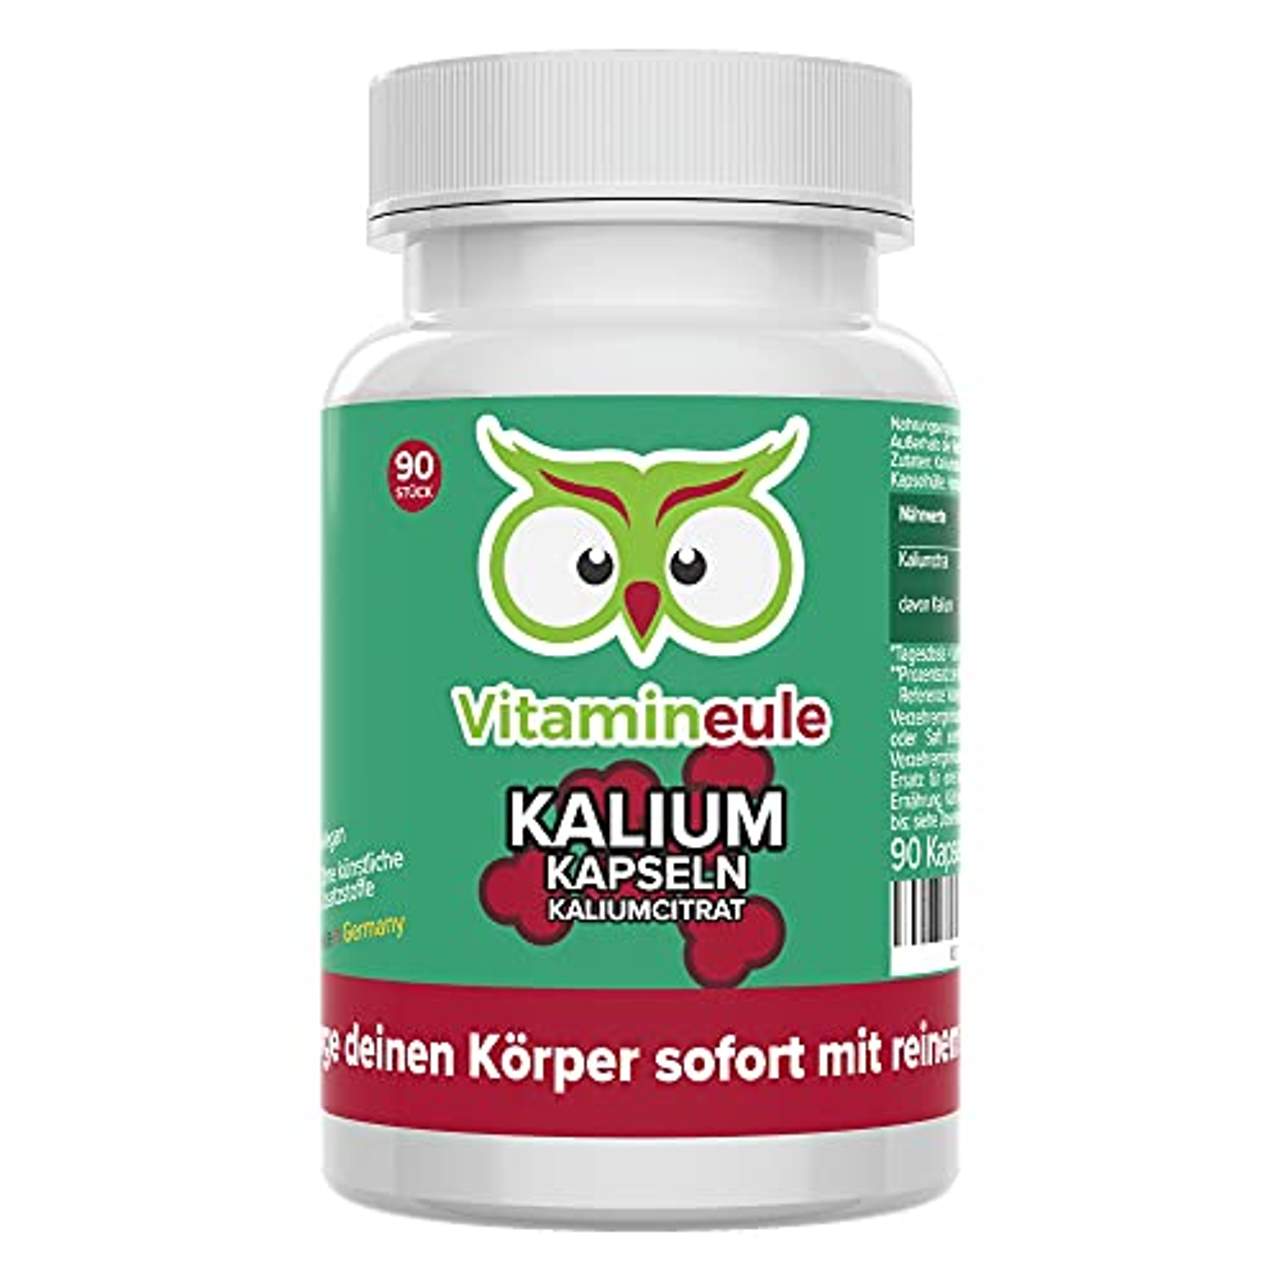 Vitamineule Kalium Kapseln